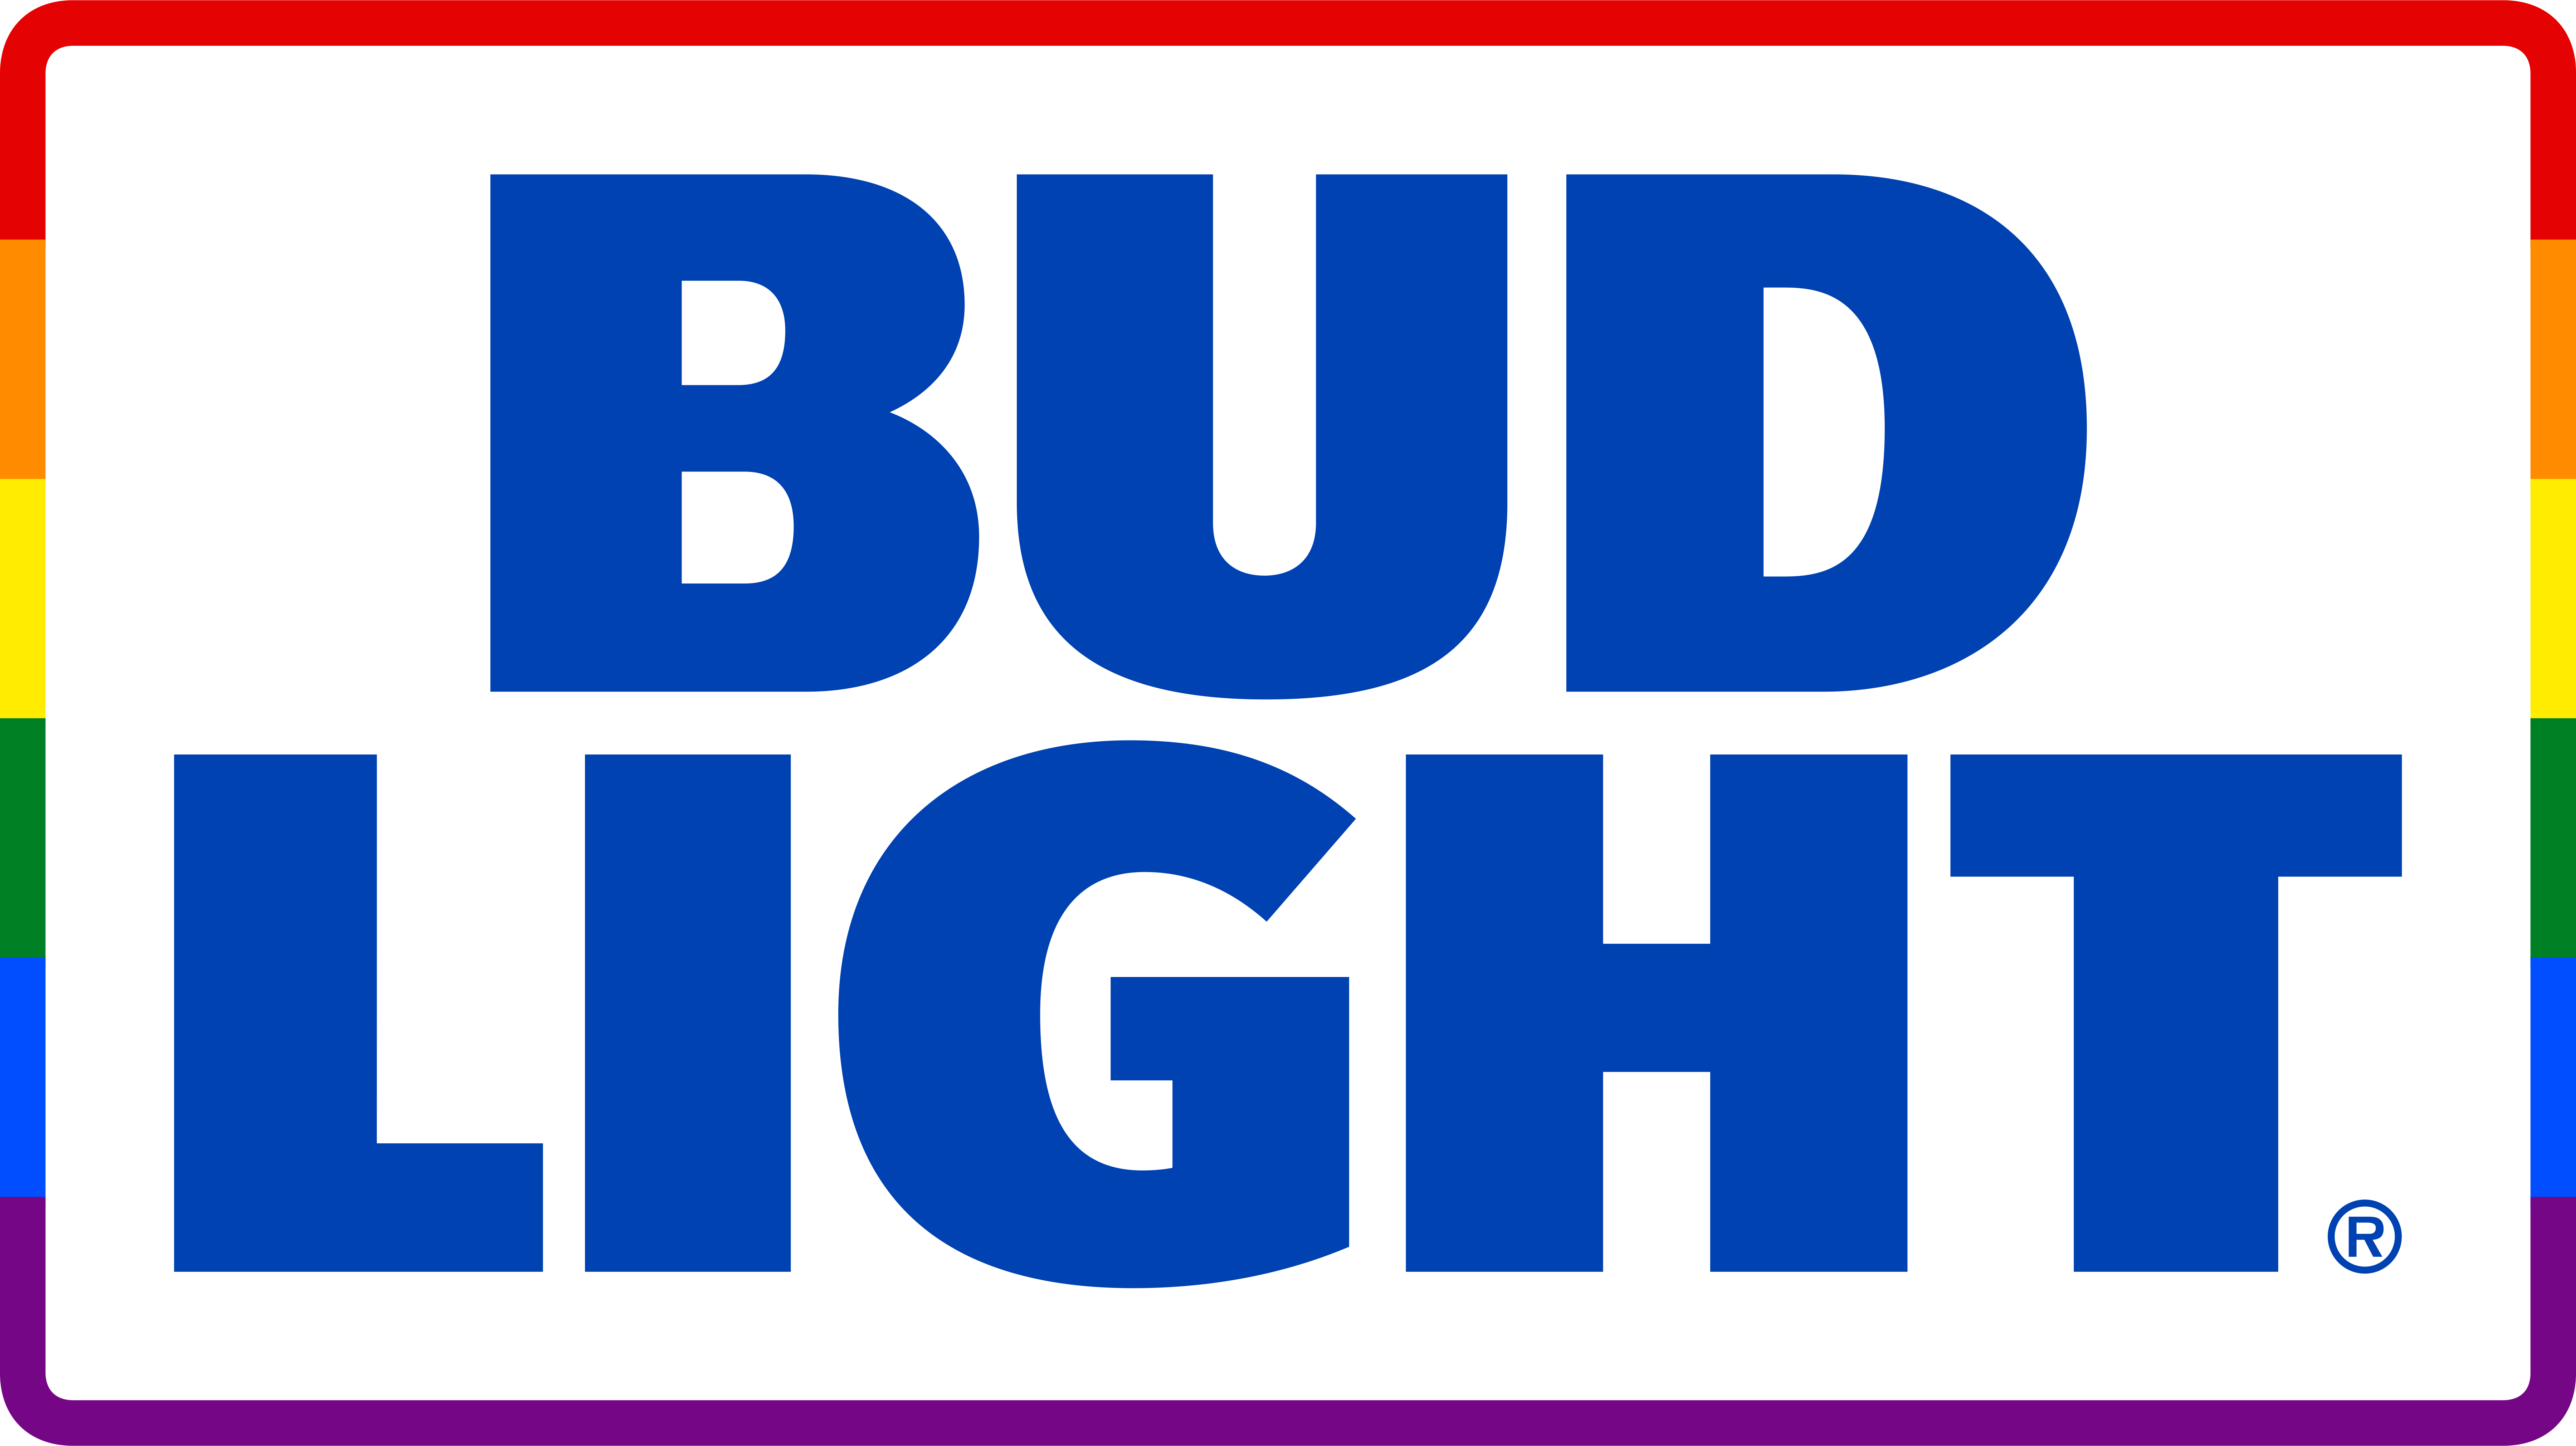 BudLt_LGBT